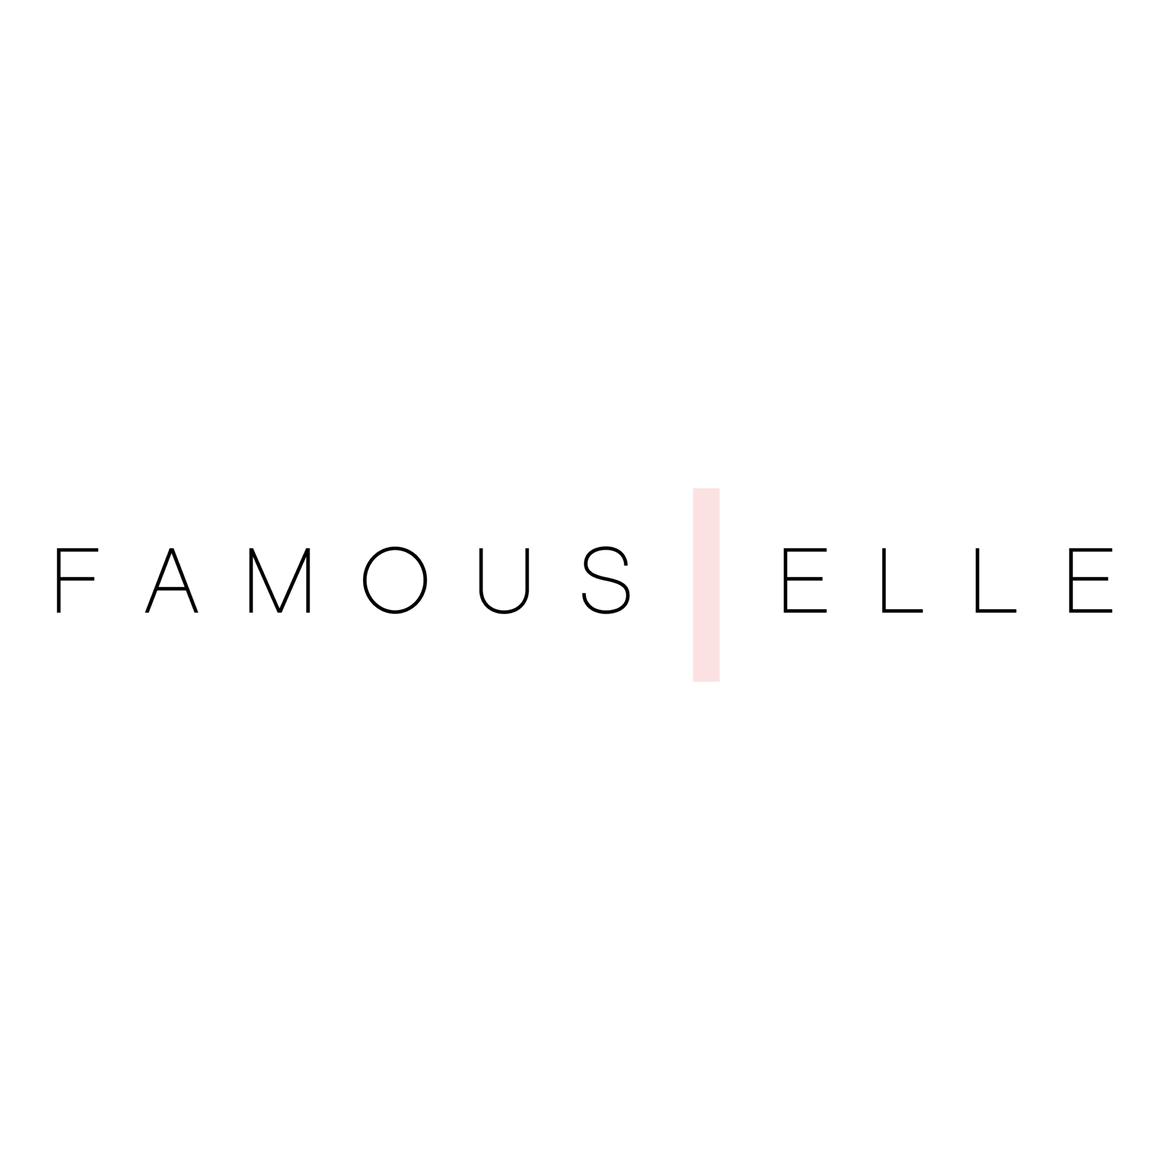 Famous|Elle's images